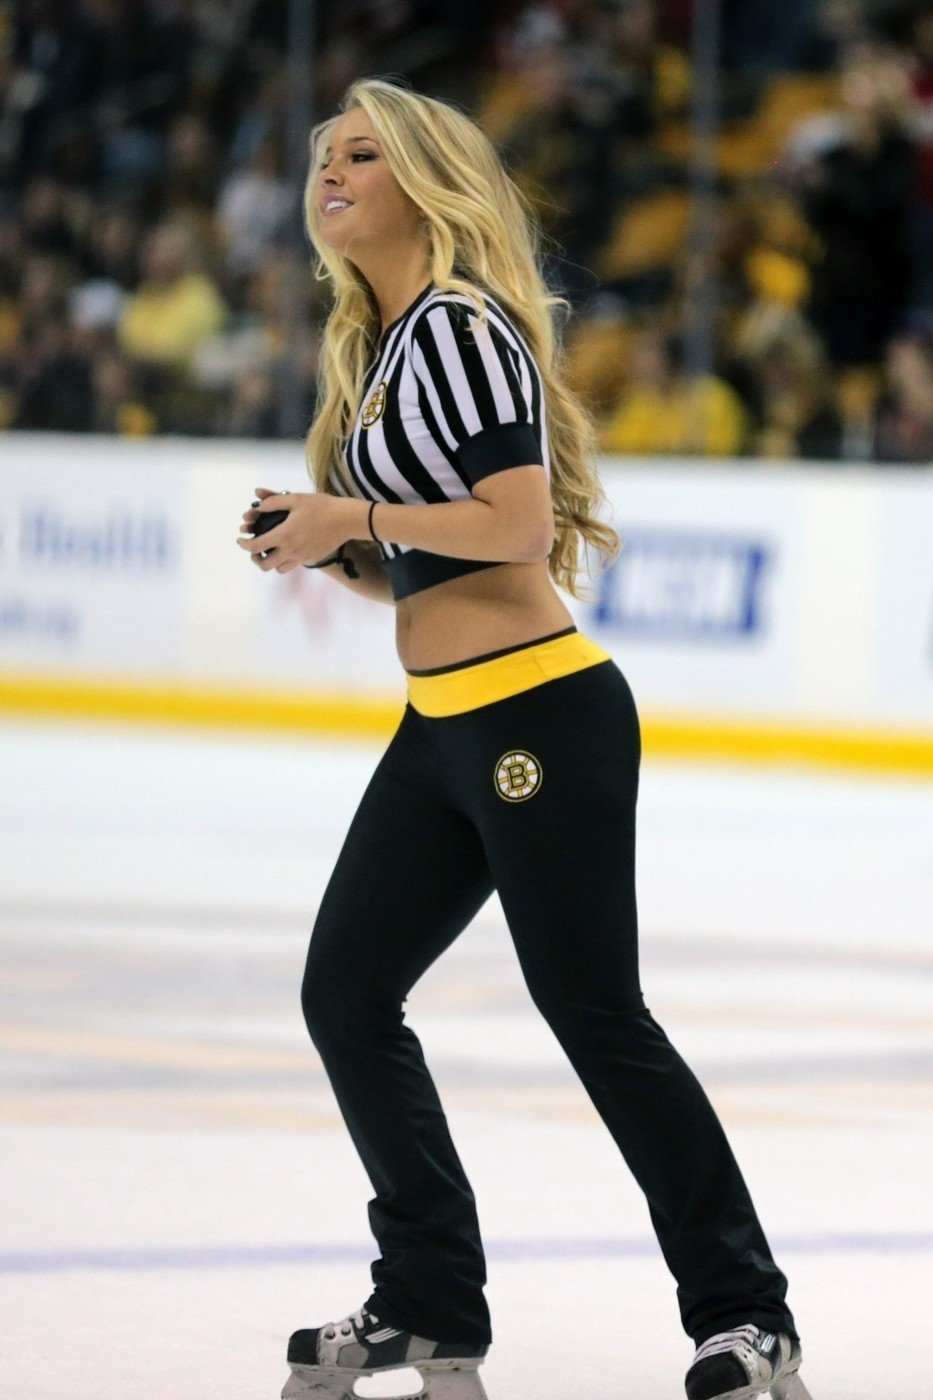 V Bostonu navlékli své ice girls do últých rozhodčovských dresů